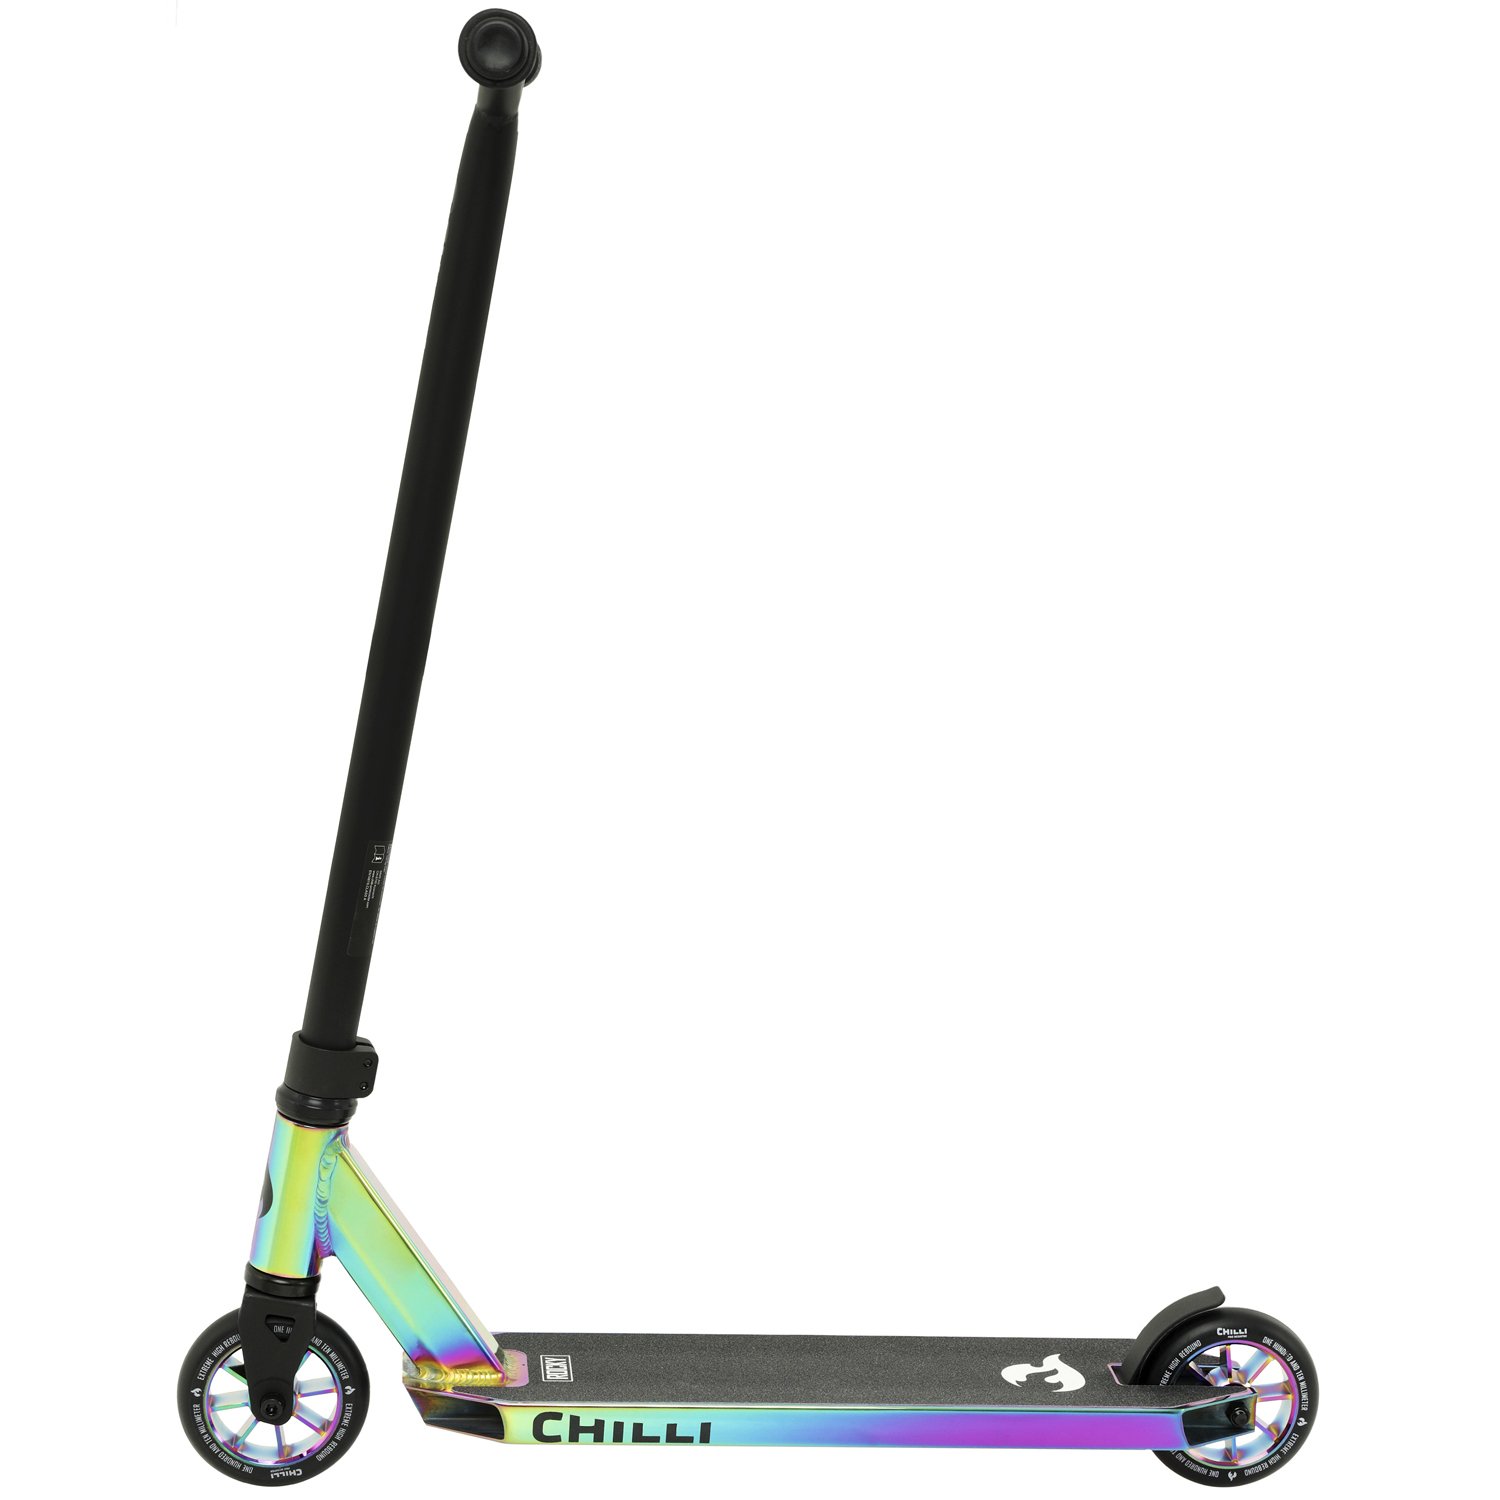 Самокат Chilli Pro Scooter Rock, взрослый, трюковый, 2022, фиолетовый, 118-6 детский велосипед forward dakota 16 год 2022 серебристый фиолетовый